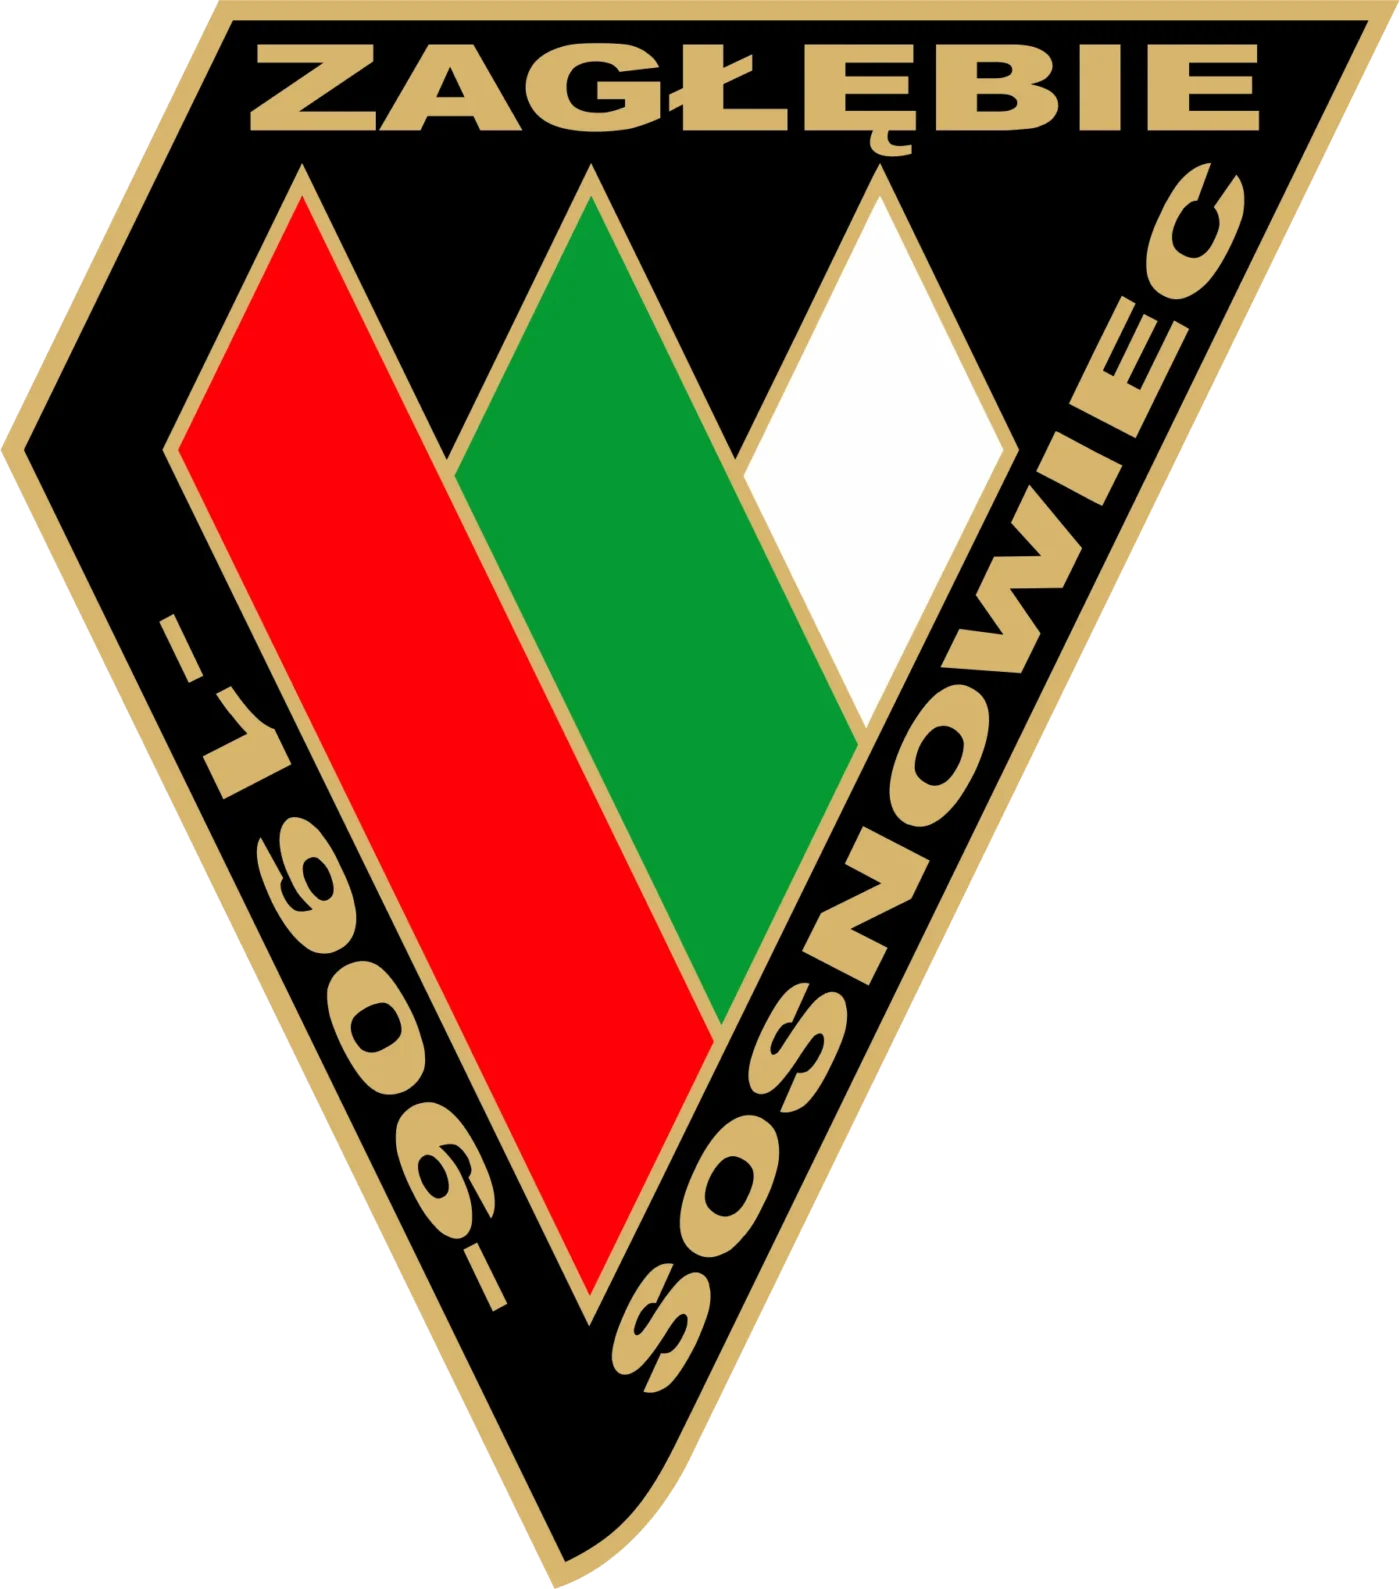 Logo klubupiłkarskiego Zagłębie Sosnowiec. Czarny trójkąt w środku trzy pasy - czerwony, zielony i biały.